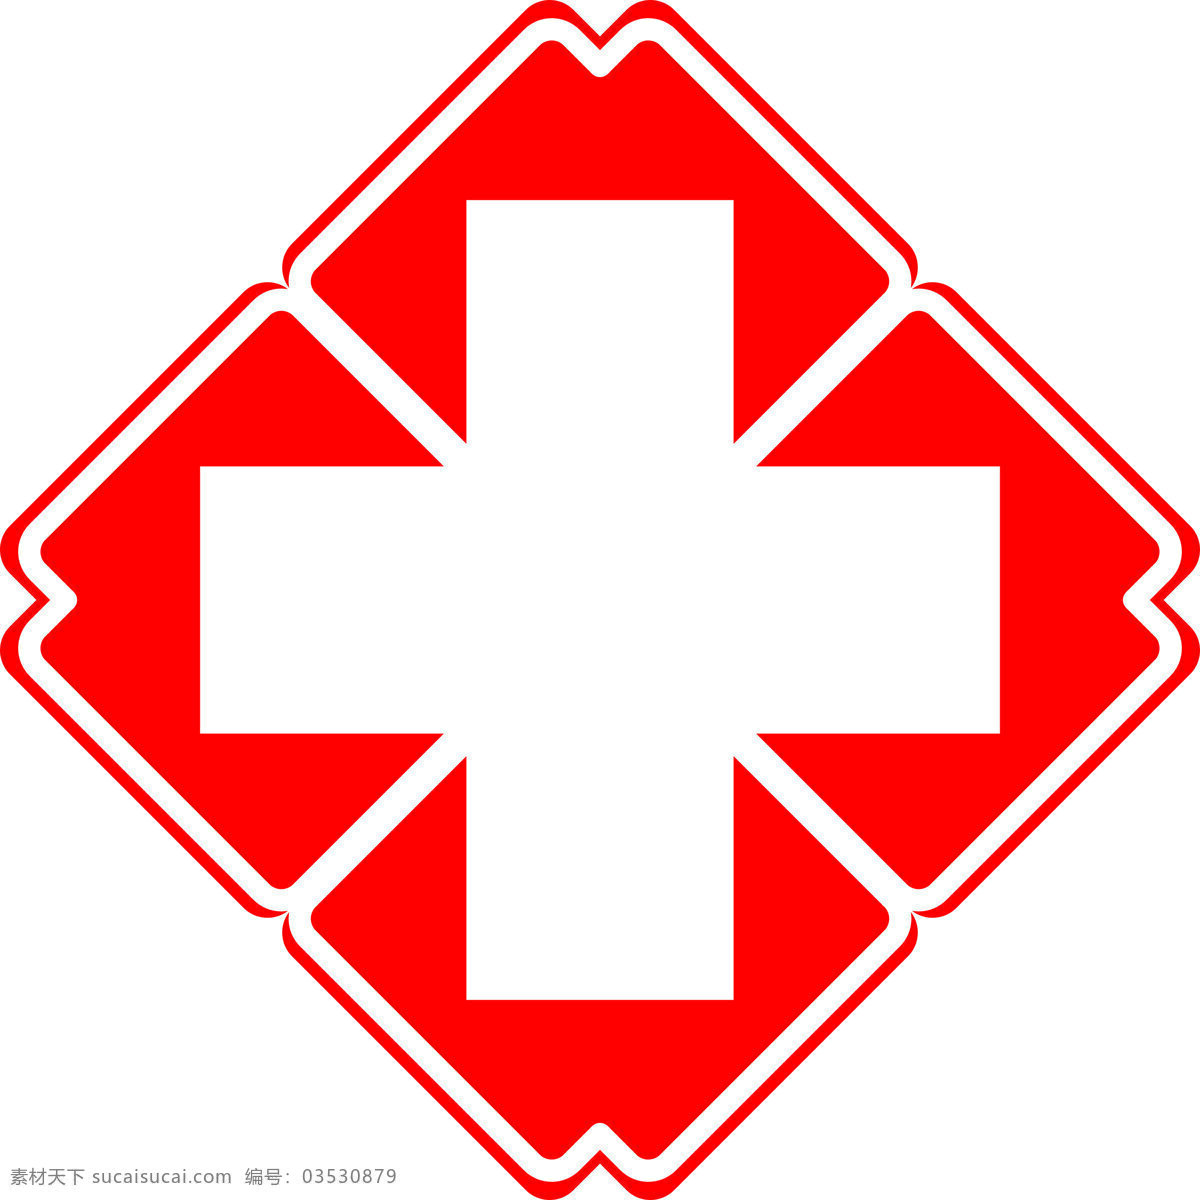 医院标志 医院图案 红十字标志 医院logo 医院素材 医院元素 红十字 公共标识 标志图标 公共标识标志